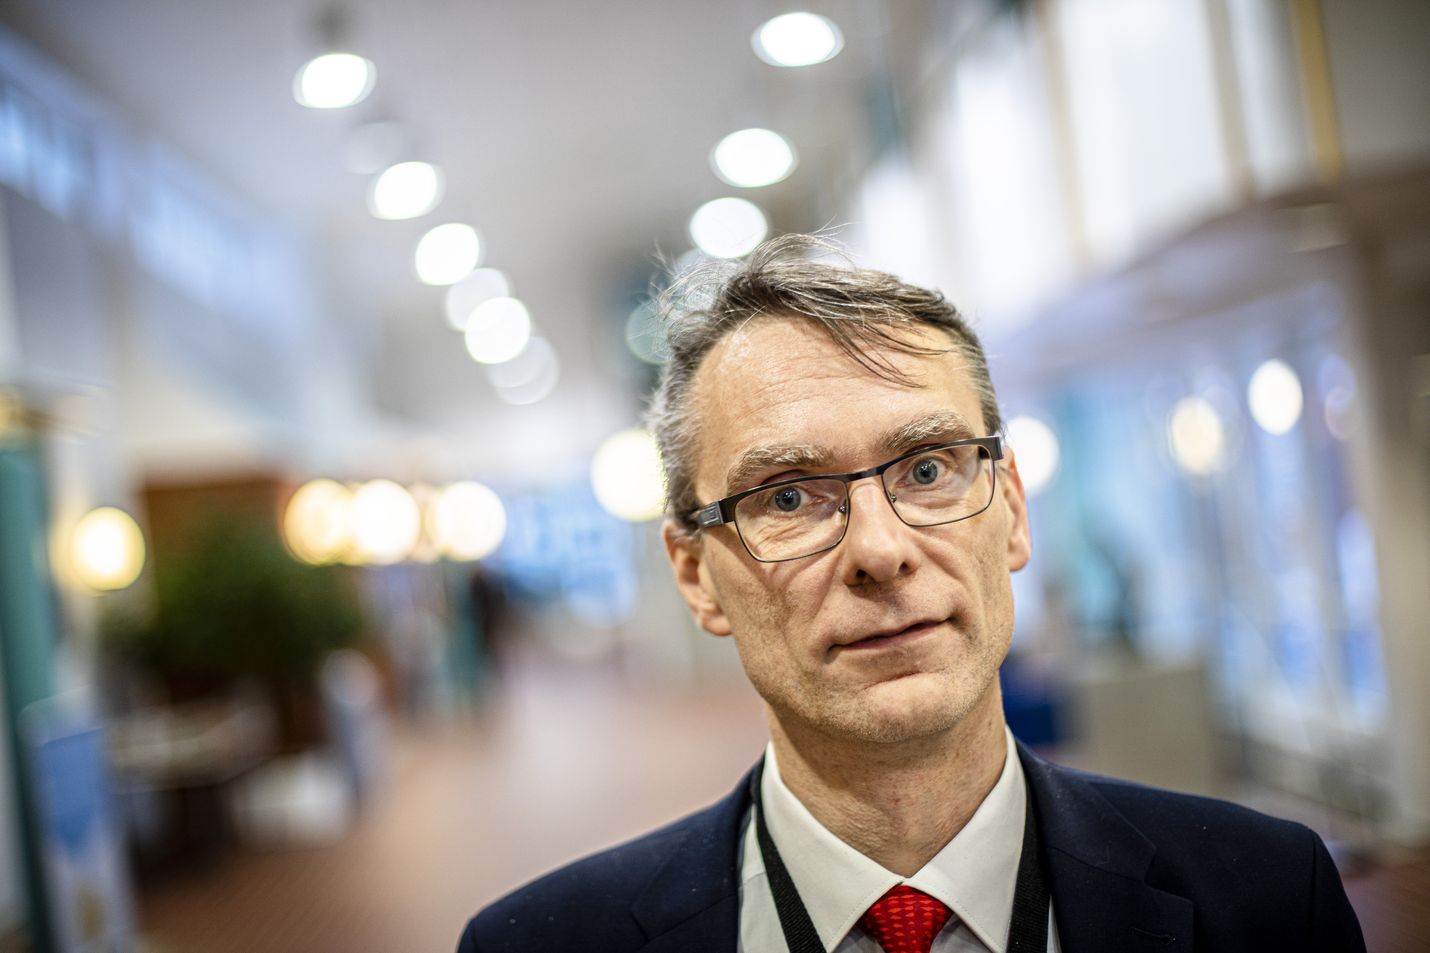 Oikeuskansleri Tuomas Pöysti kävi lokakuussa läpi laajasti eri toimintalinjojen etuja ja ongelmia, kun hän vastasi suomalaisten kanteluihin al-Holin leirin lapsista ja naisista.